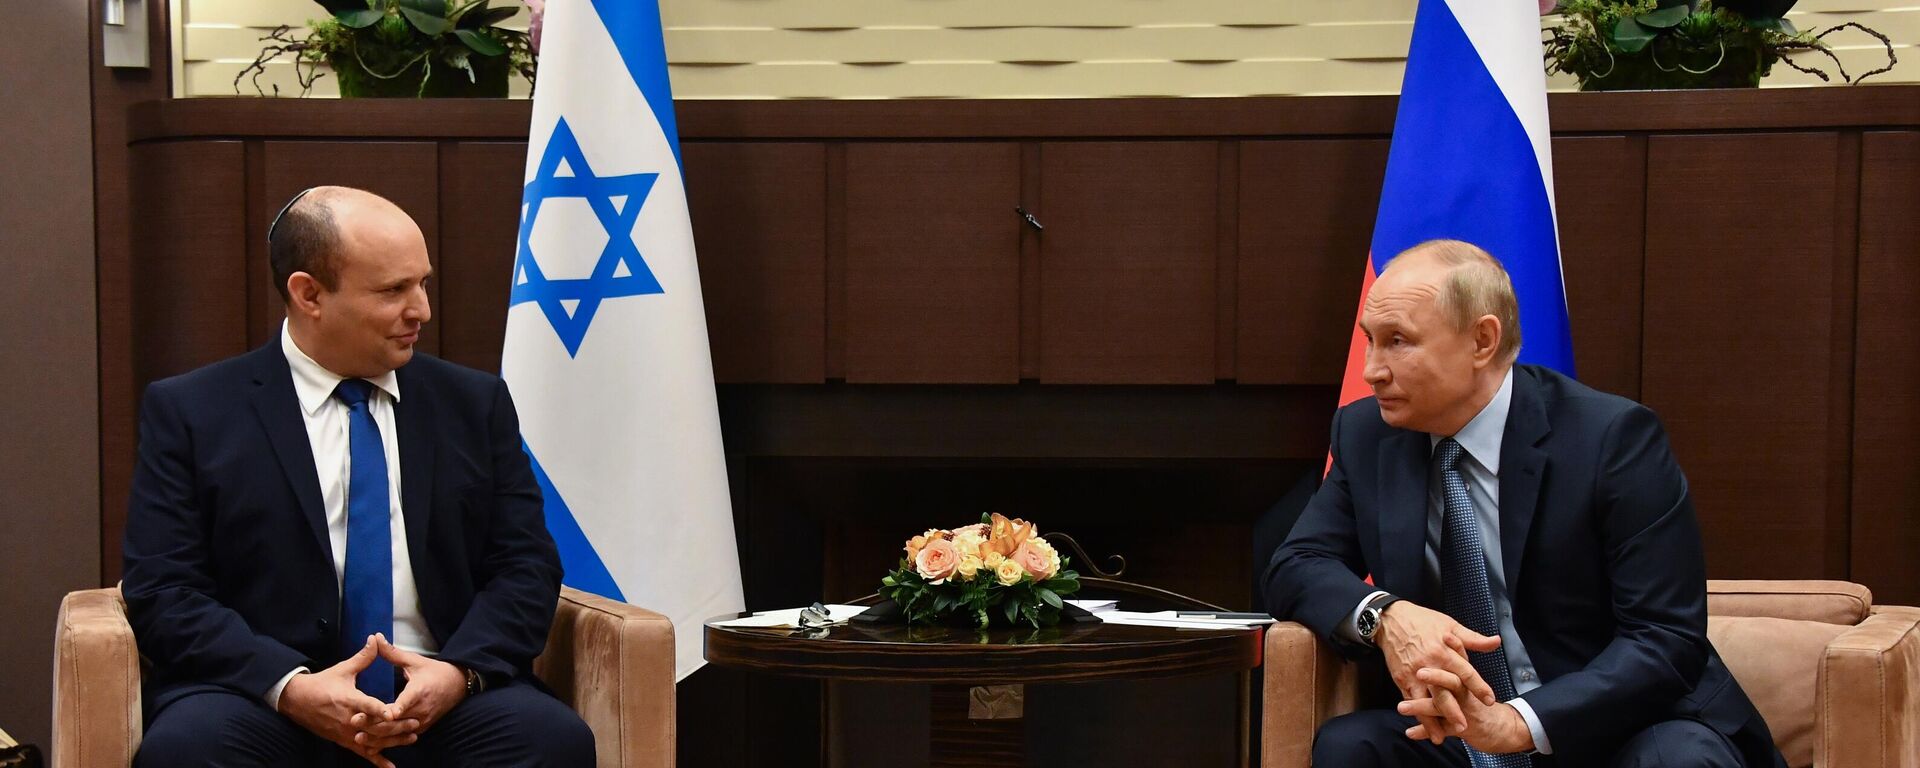 Rusya Devlet Başkanı Vladimir Putin, Soçi'de yeni İsrail Başbakanı Naftali Bennett ile ilk yüz yüze görüşmesini gerçekleştirdi. - Sputnik Türkiye, 1920, 22.10.2021